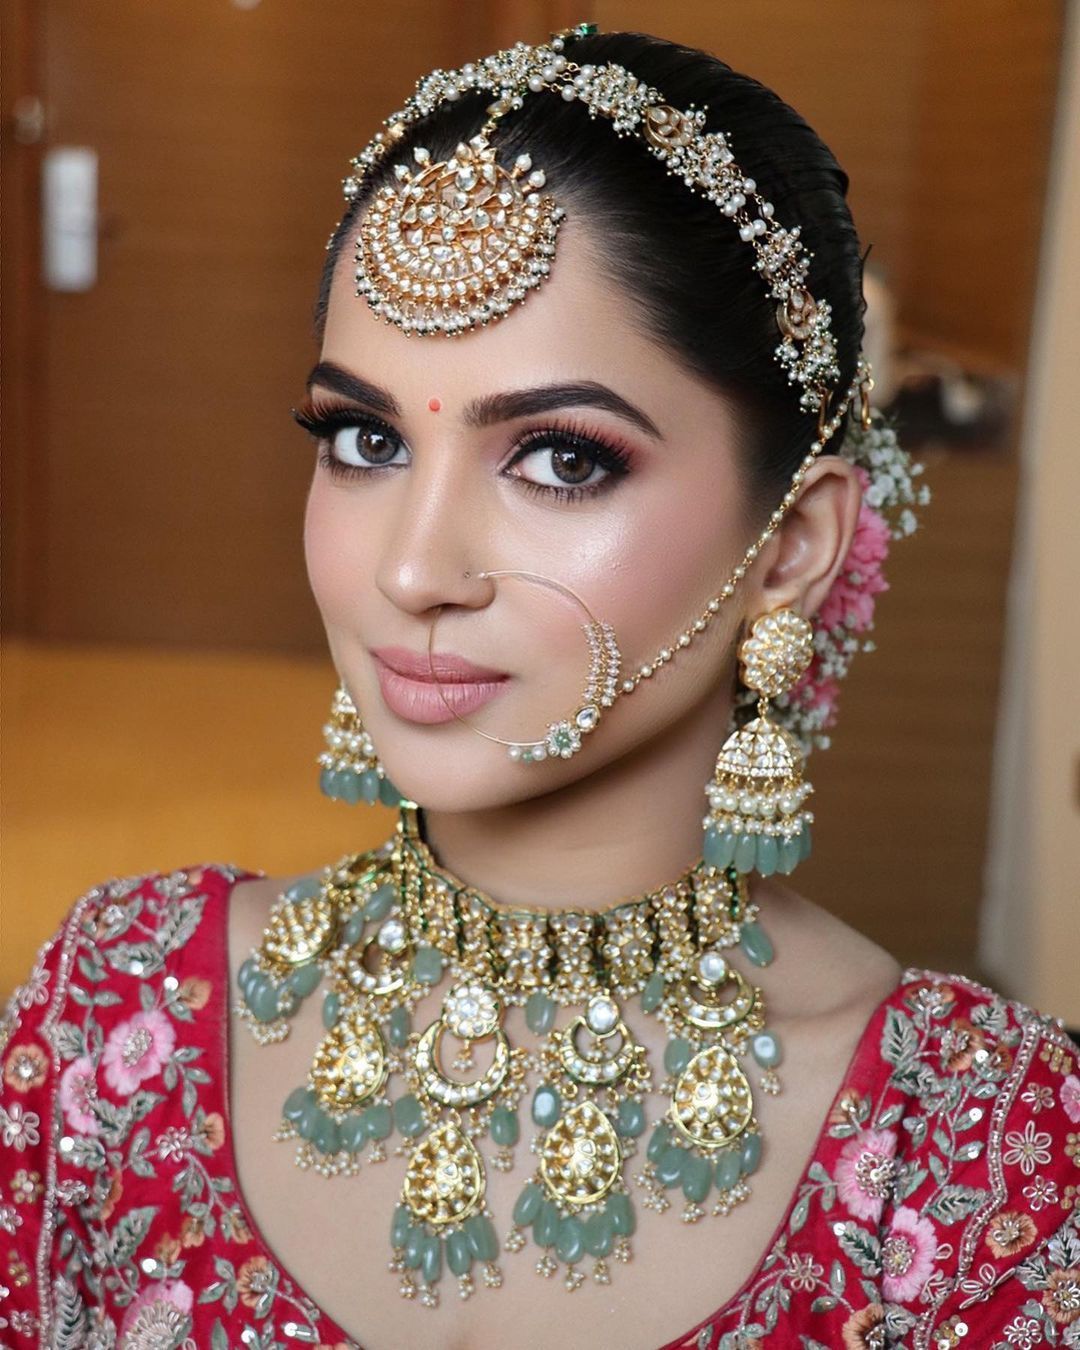 Maang Teeka Designs For Bride From Rajputi Matha Patti To Punjabi Big Teeka  These Can Be The Choice | शादी में मांग टीका बदल सकता है दुल्हनिया का पूरा  लुक, ये डिजाइन